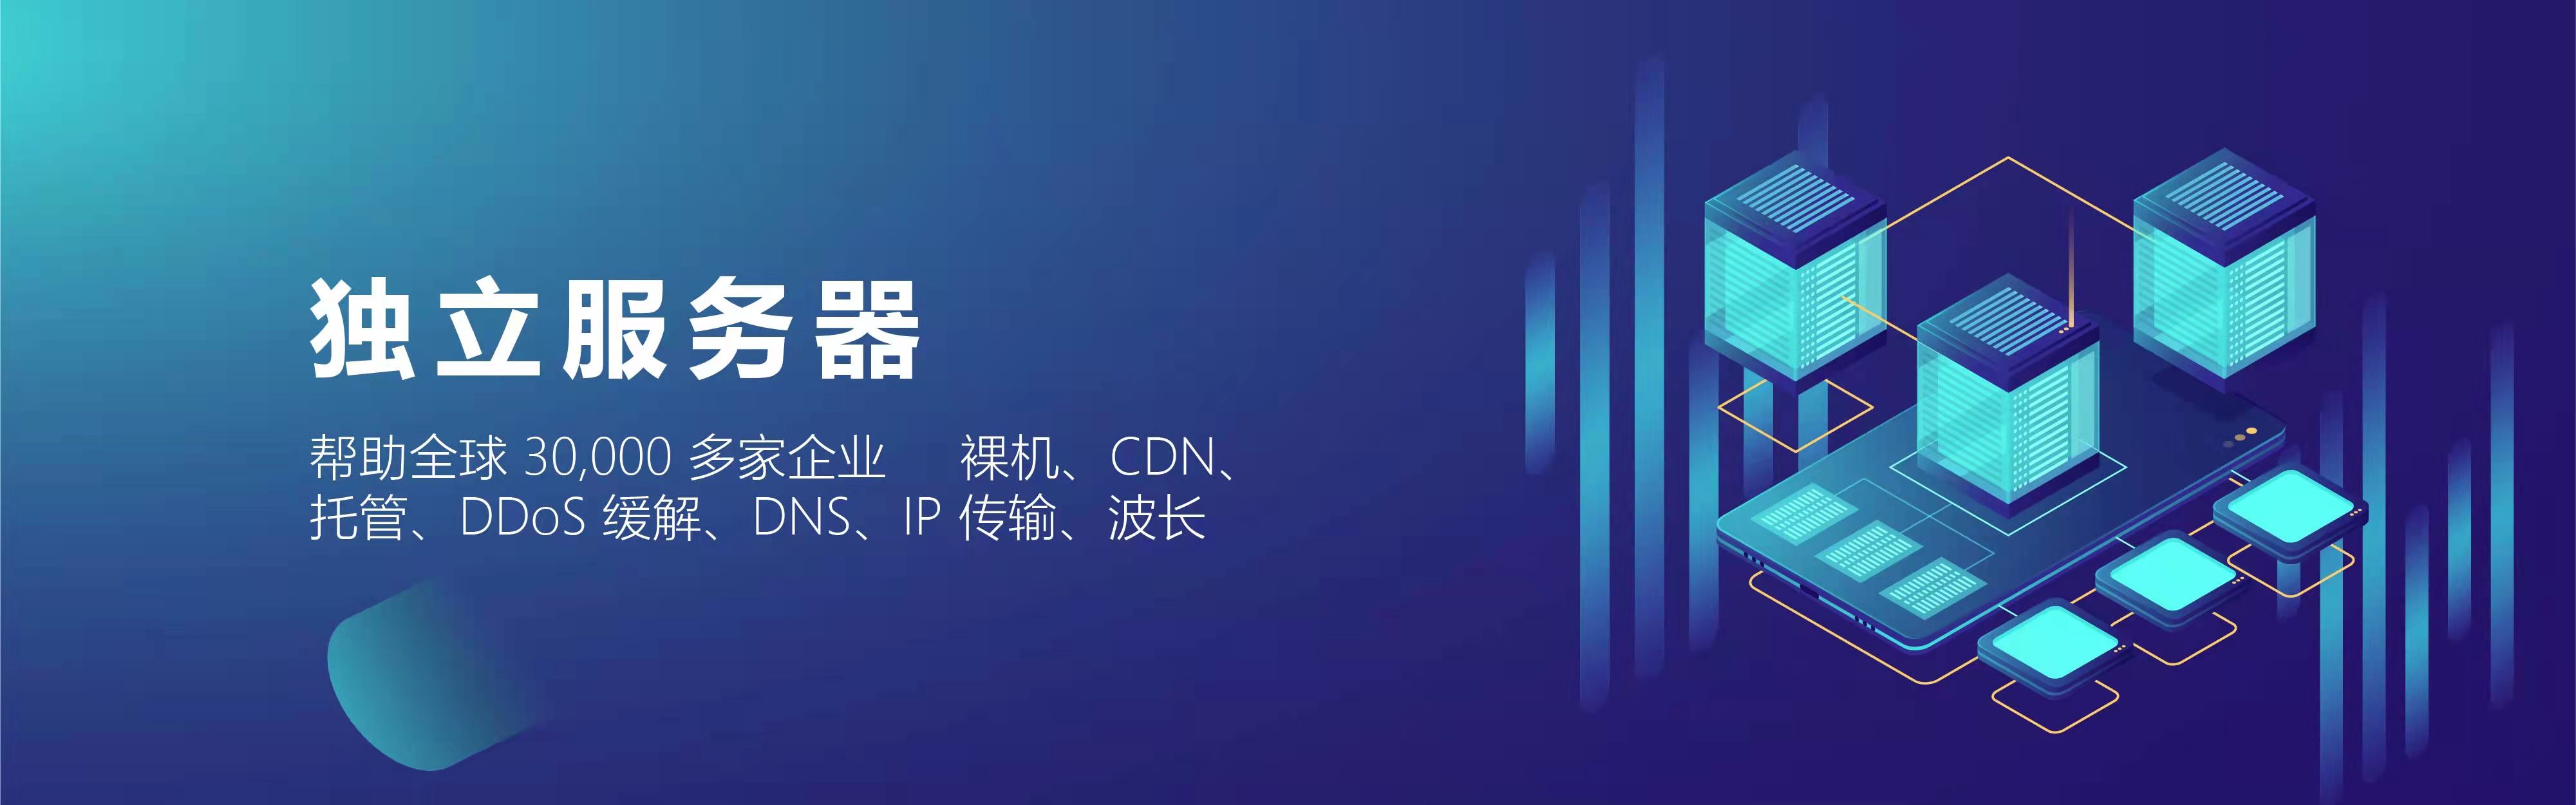 CNNIC：将为 100 万家中小企业提供“.CN” 和“.中国”域名免费注册服务